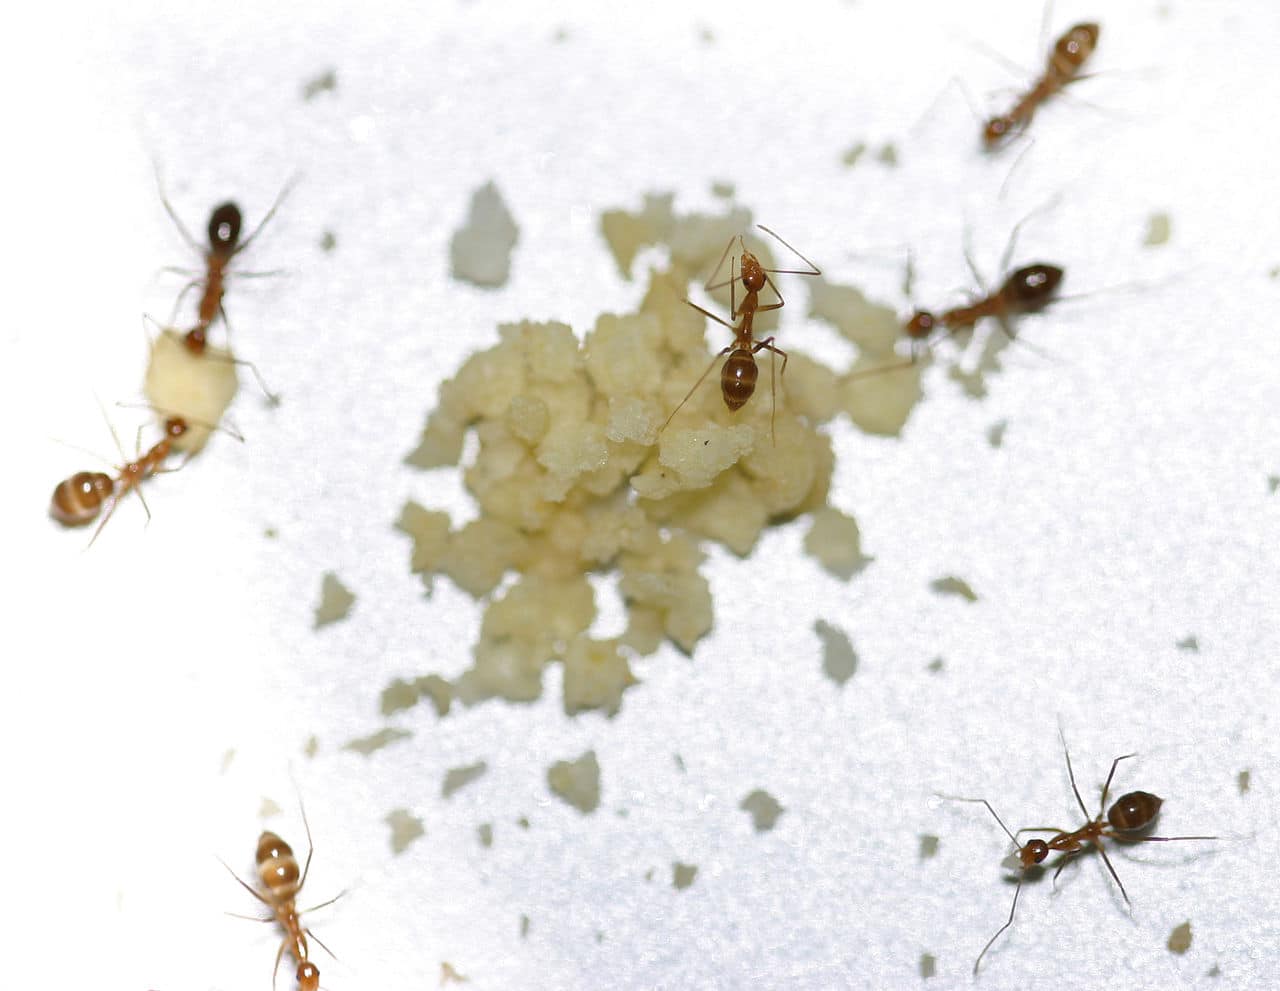 Crazy Ants